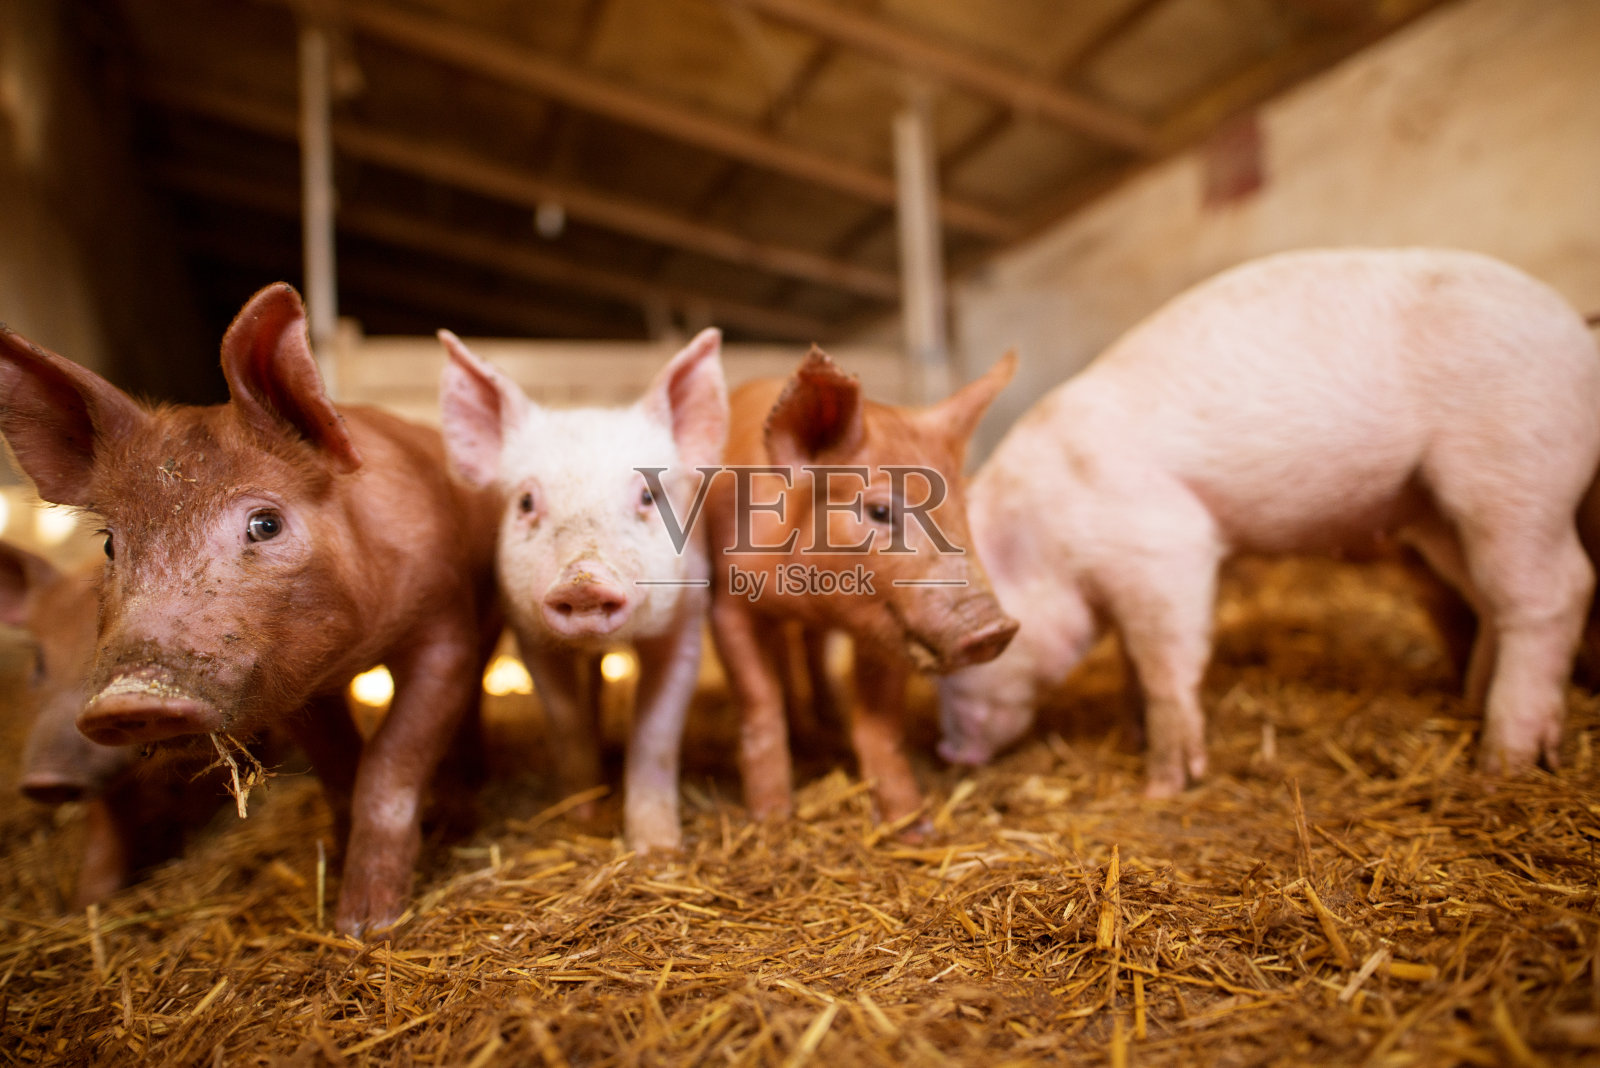 中小猪场重大疫病处理紧急方案和操作要点 - 大畜牧网